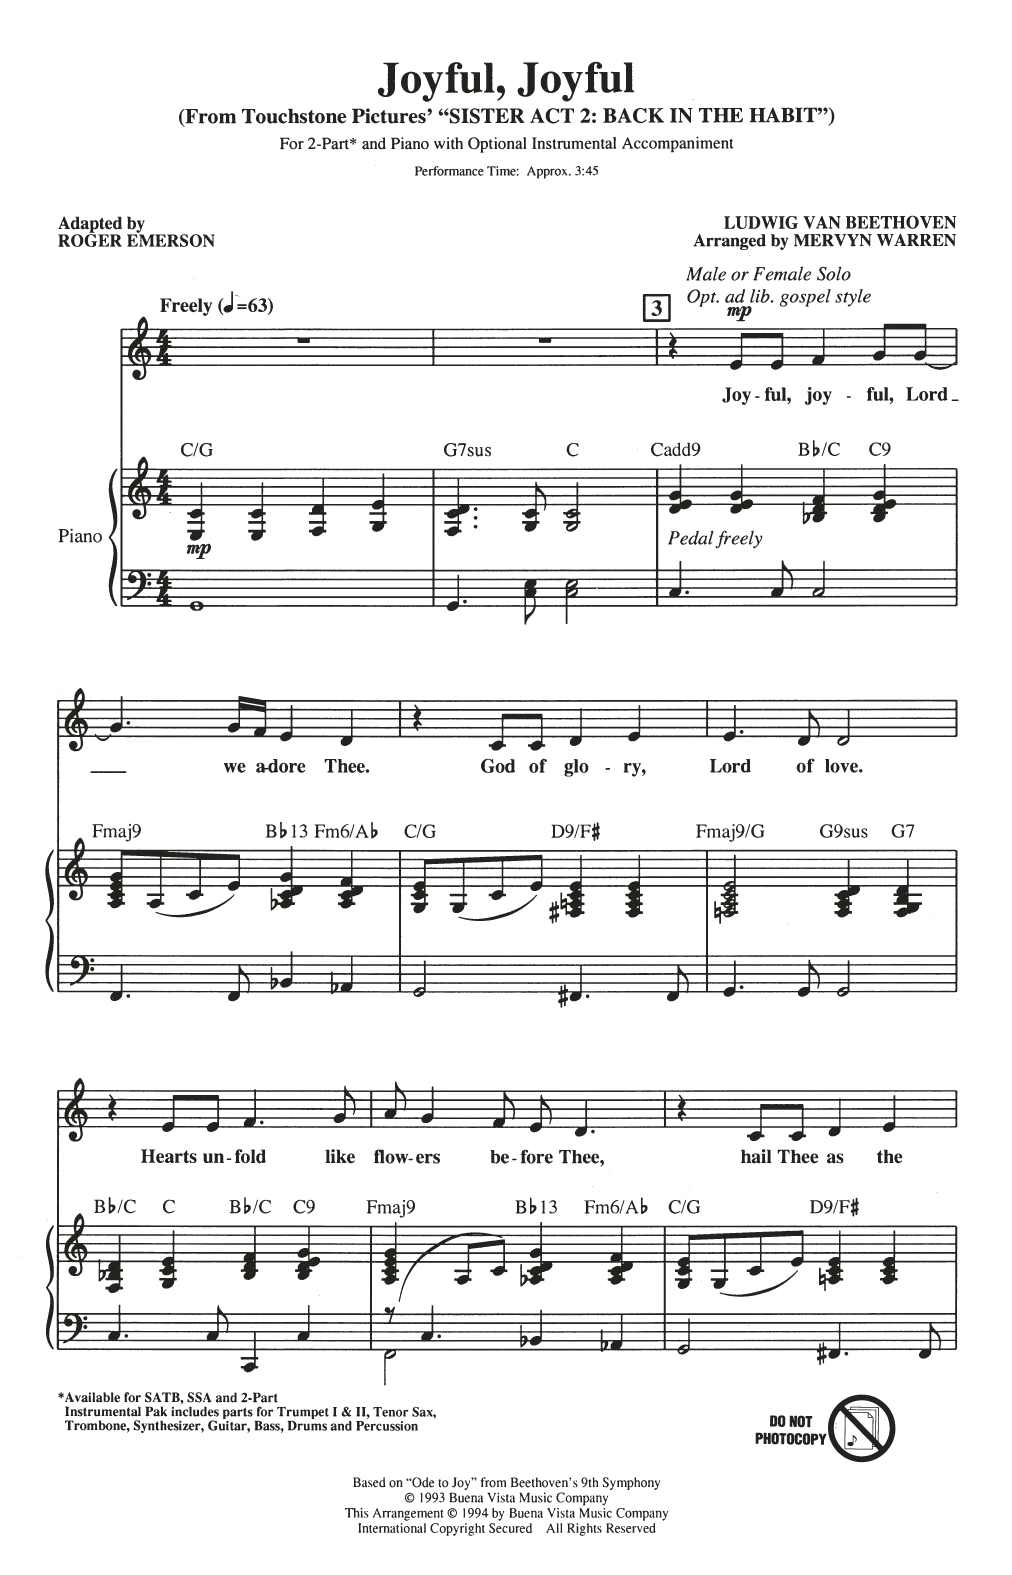 Mervyn Warren Joyful, Joyful (from Sister Act 2) (arr. Roger Emerson) sheet music notes and chords arranged for SATB Choir